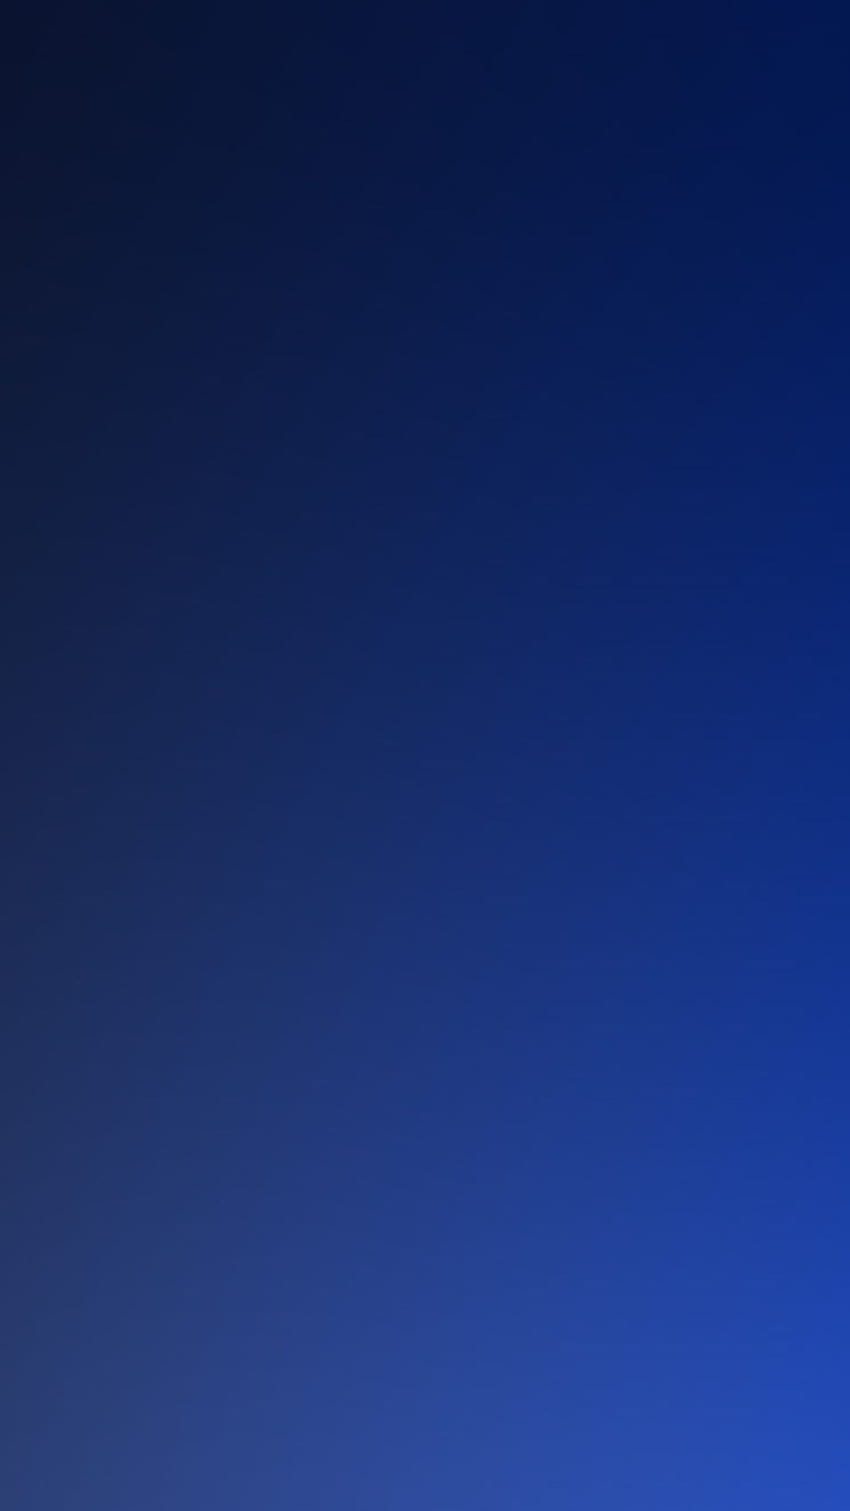 de desenfoque de gradación de océano azul oscuro puro para iPhone - Sólido fondo de pantalla del teléfono